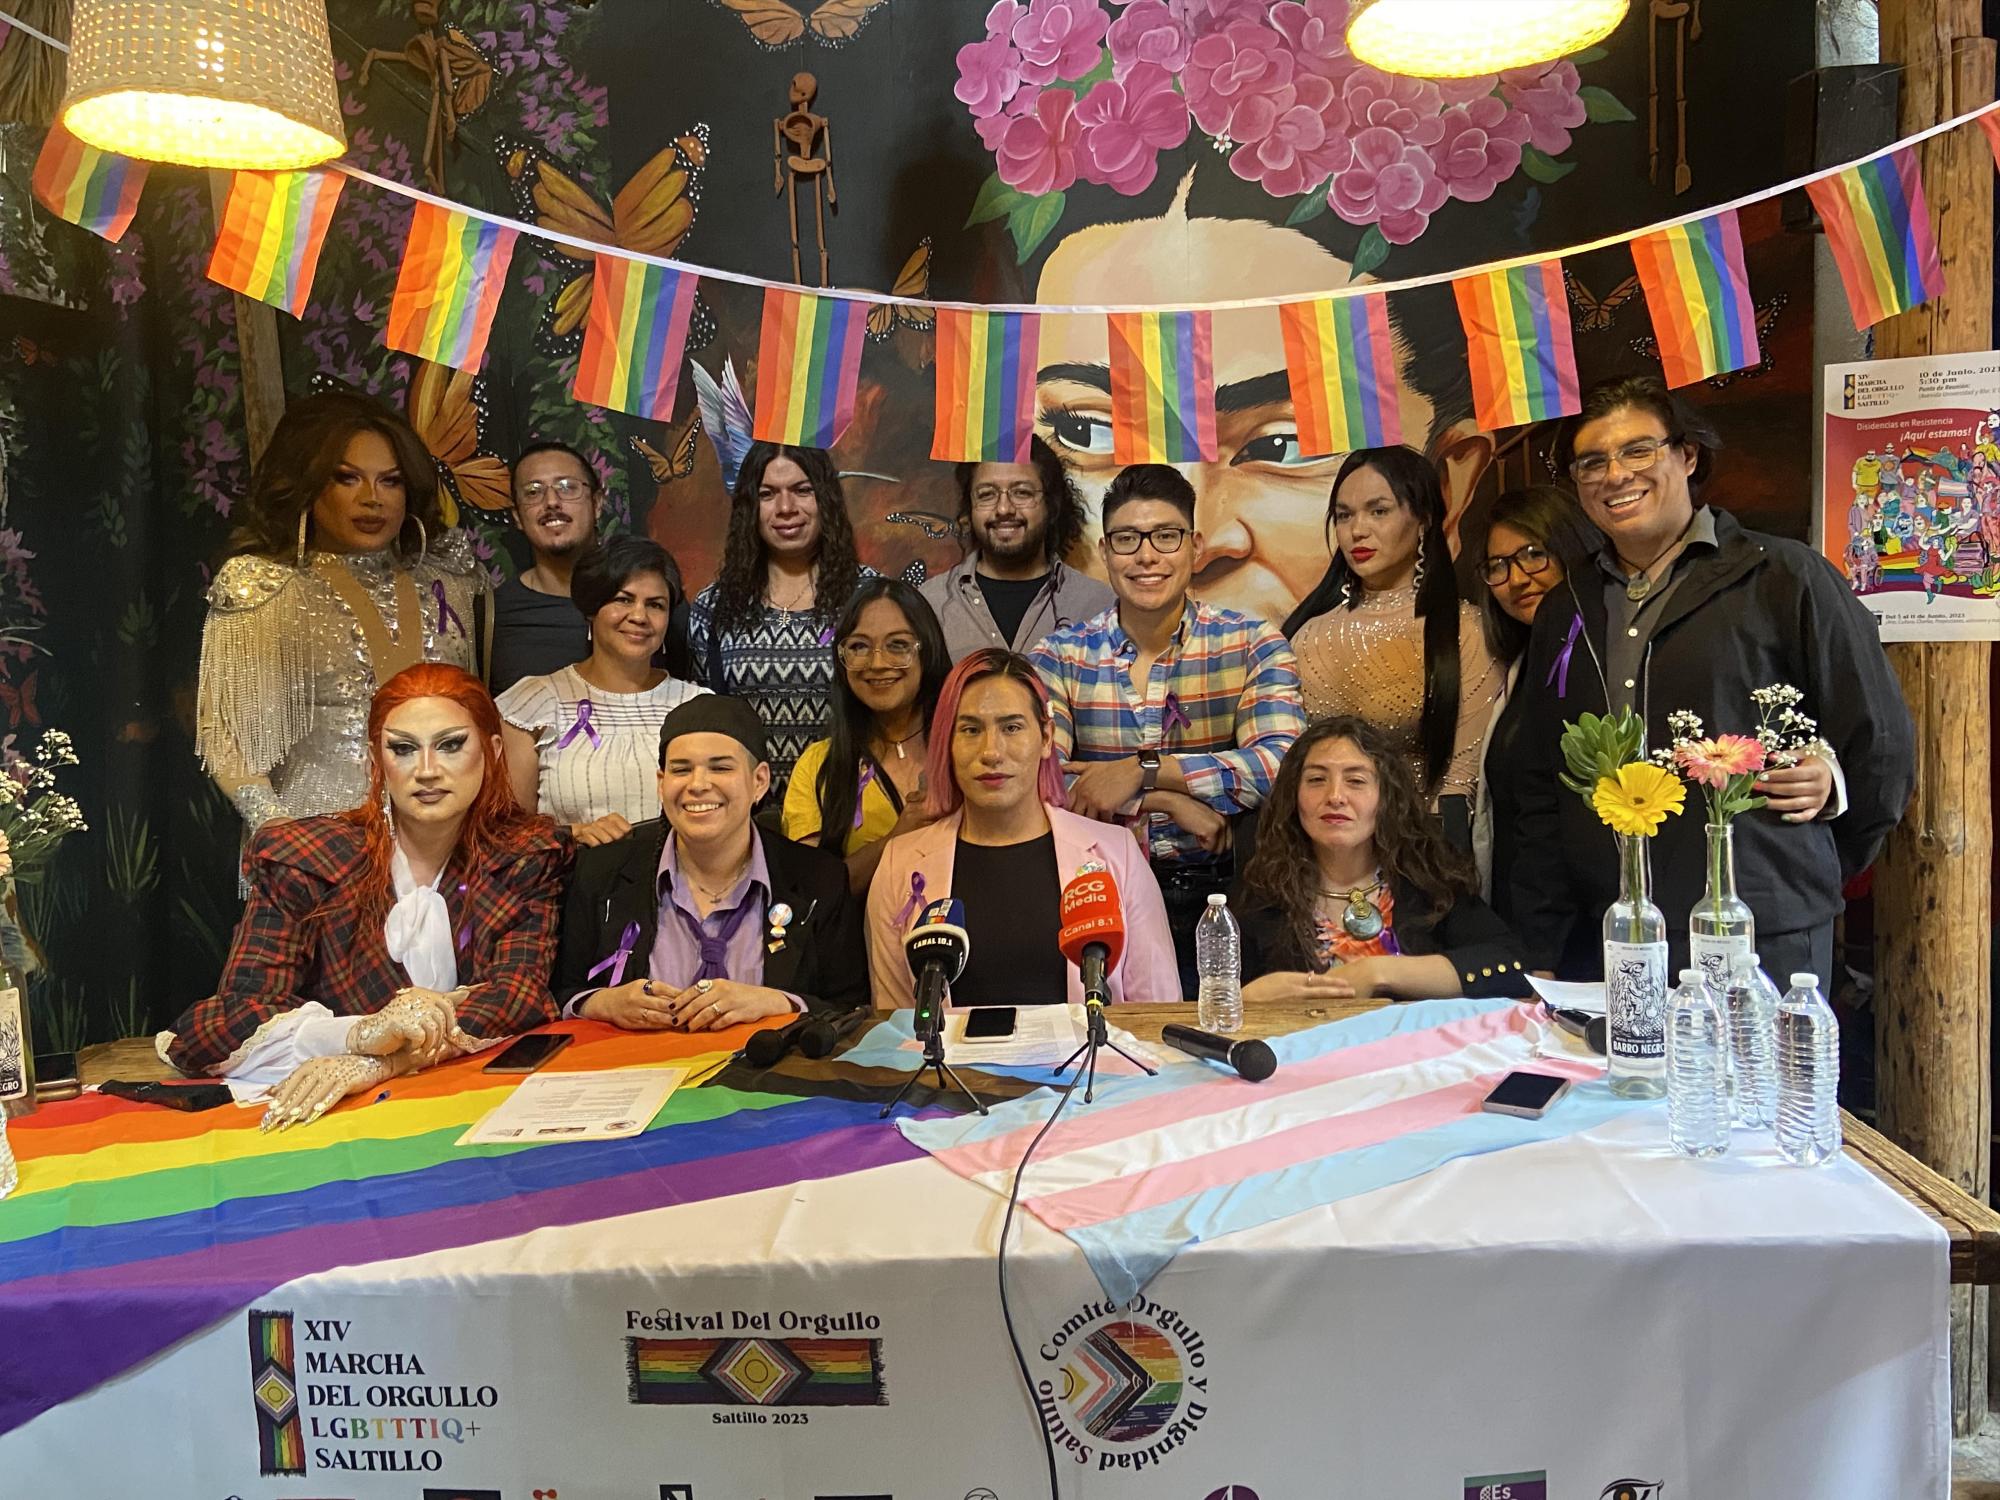 ¿Estás listx? Dan más detalles sobre marcha LGBTTTIQA+ en Saltillo y anuncian Festival del Orgullo. Noticias en tiempo real